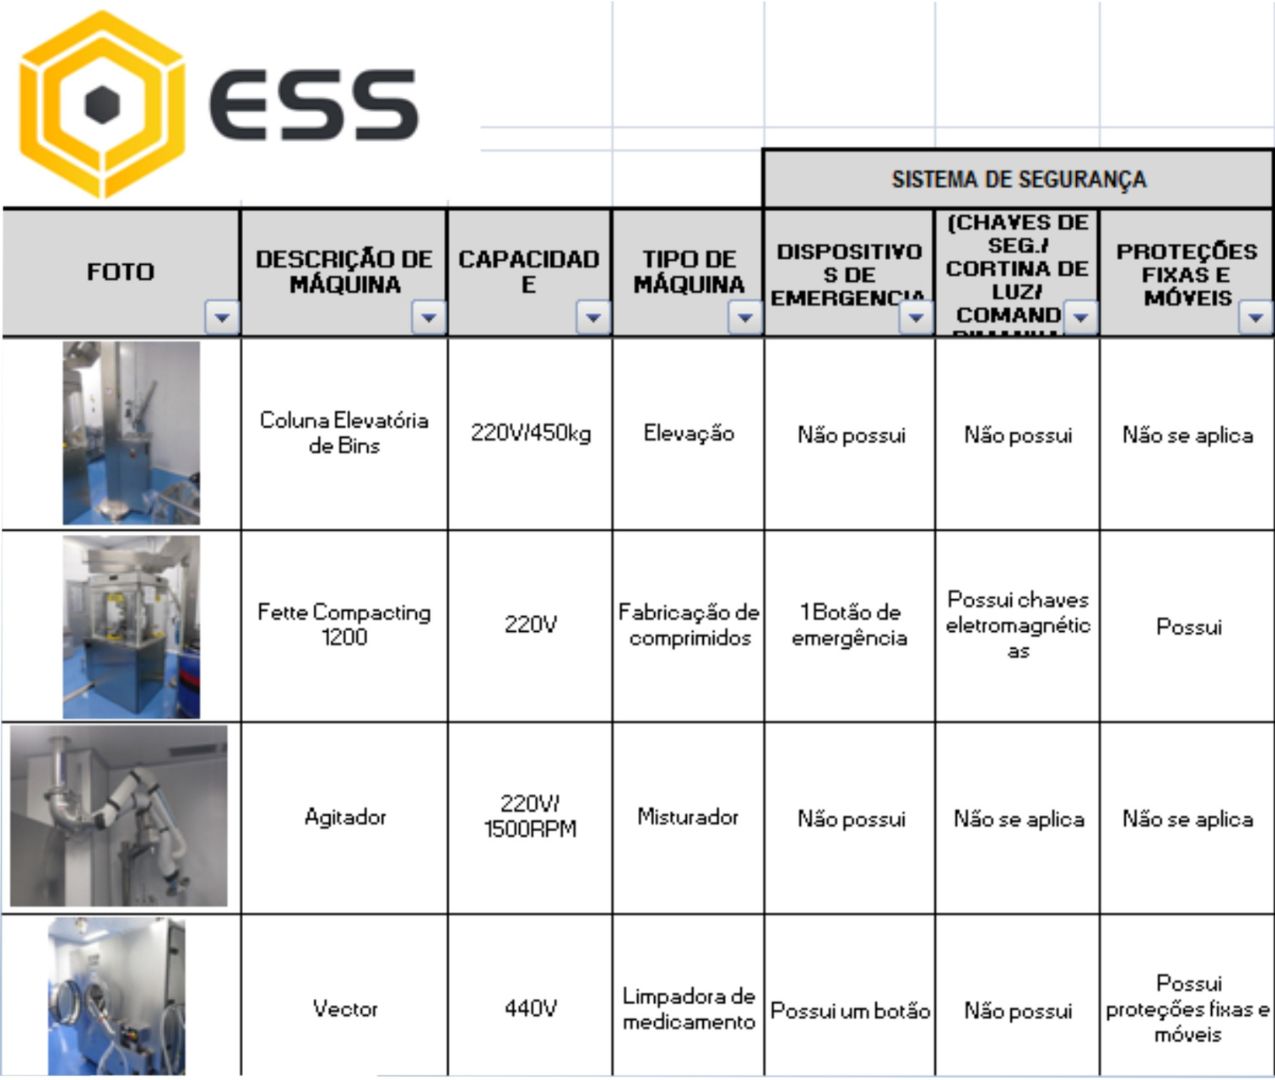 Site ESS - Case de Sucesso 1 - Inventario de maquinas e equipamentos (1)